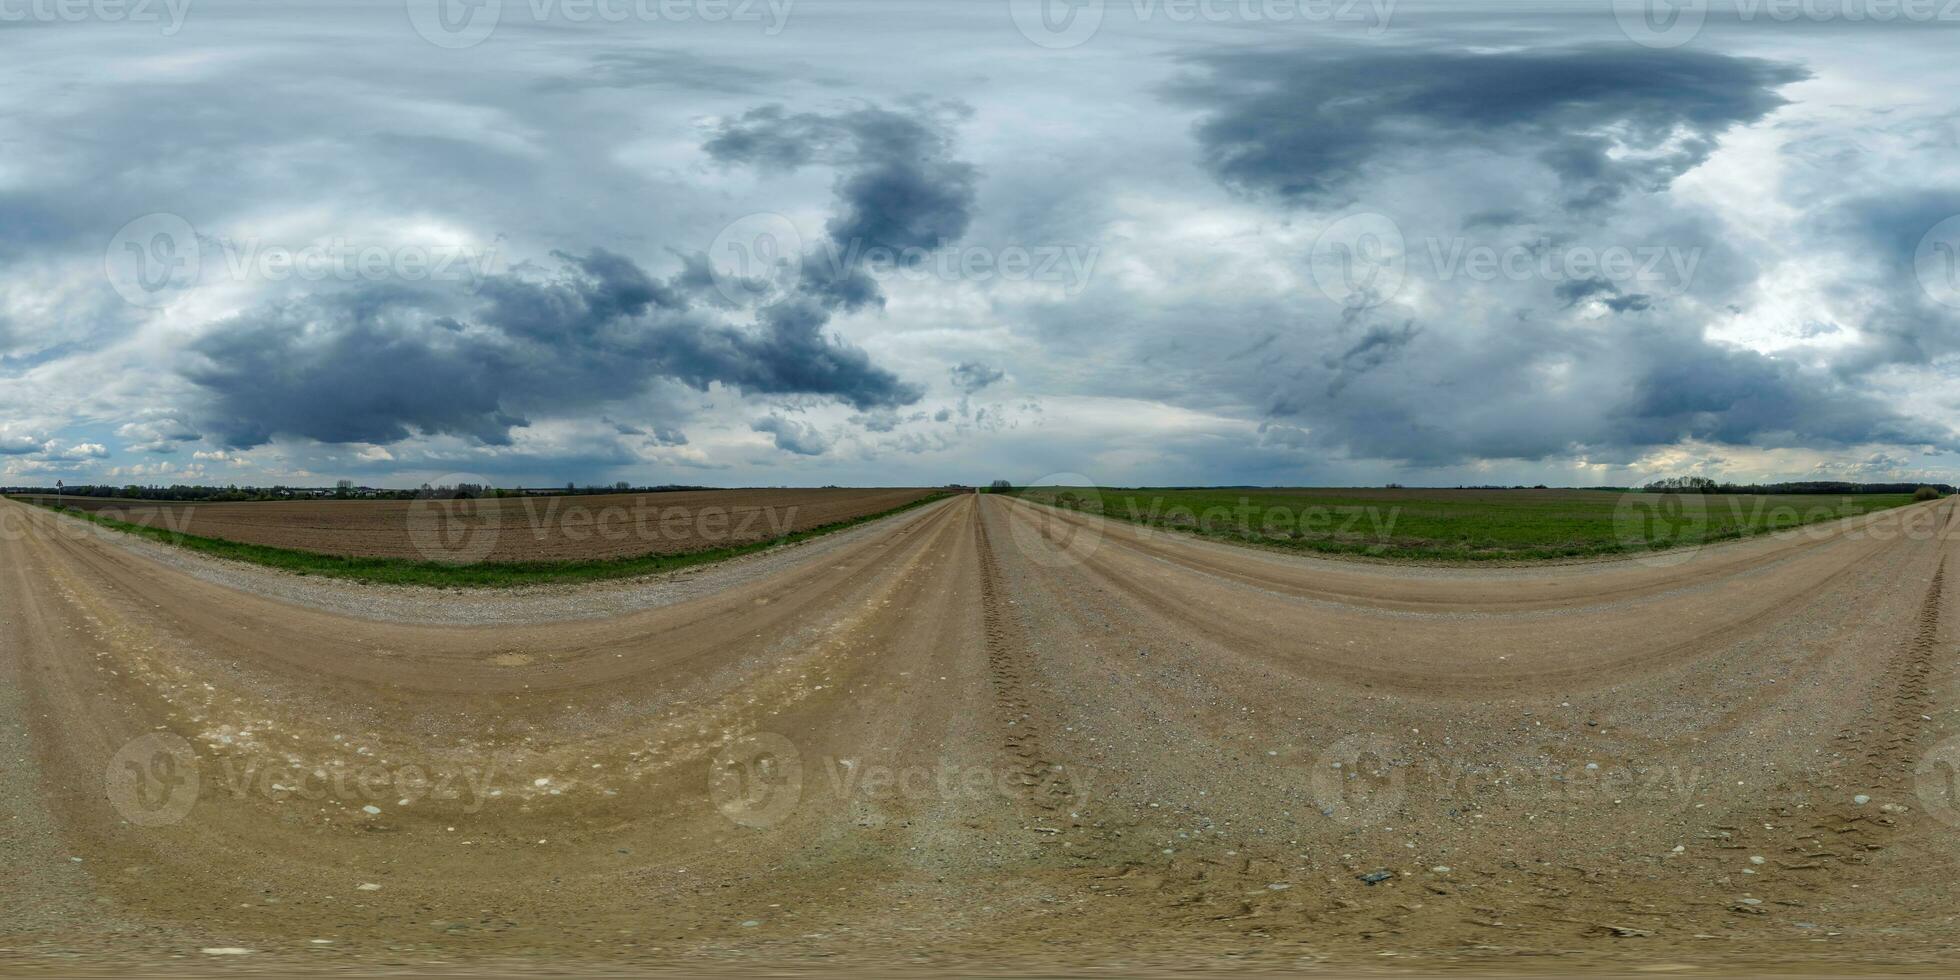 noche 360 hdri panorama en grava la carretera con nubes en nublado lluvia cielo antes de tormenta en equirrectangular esférico sin costura proyección, utilizar como cielo reemplazo en zumbido panorámicas, juego desarrollo foto